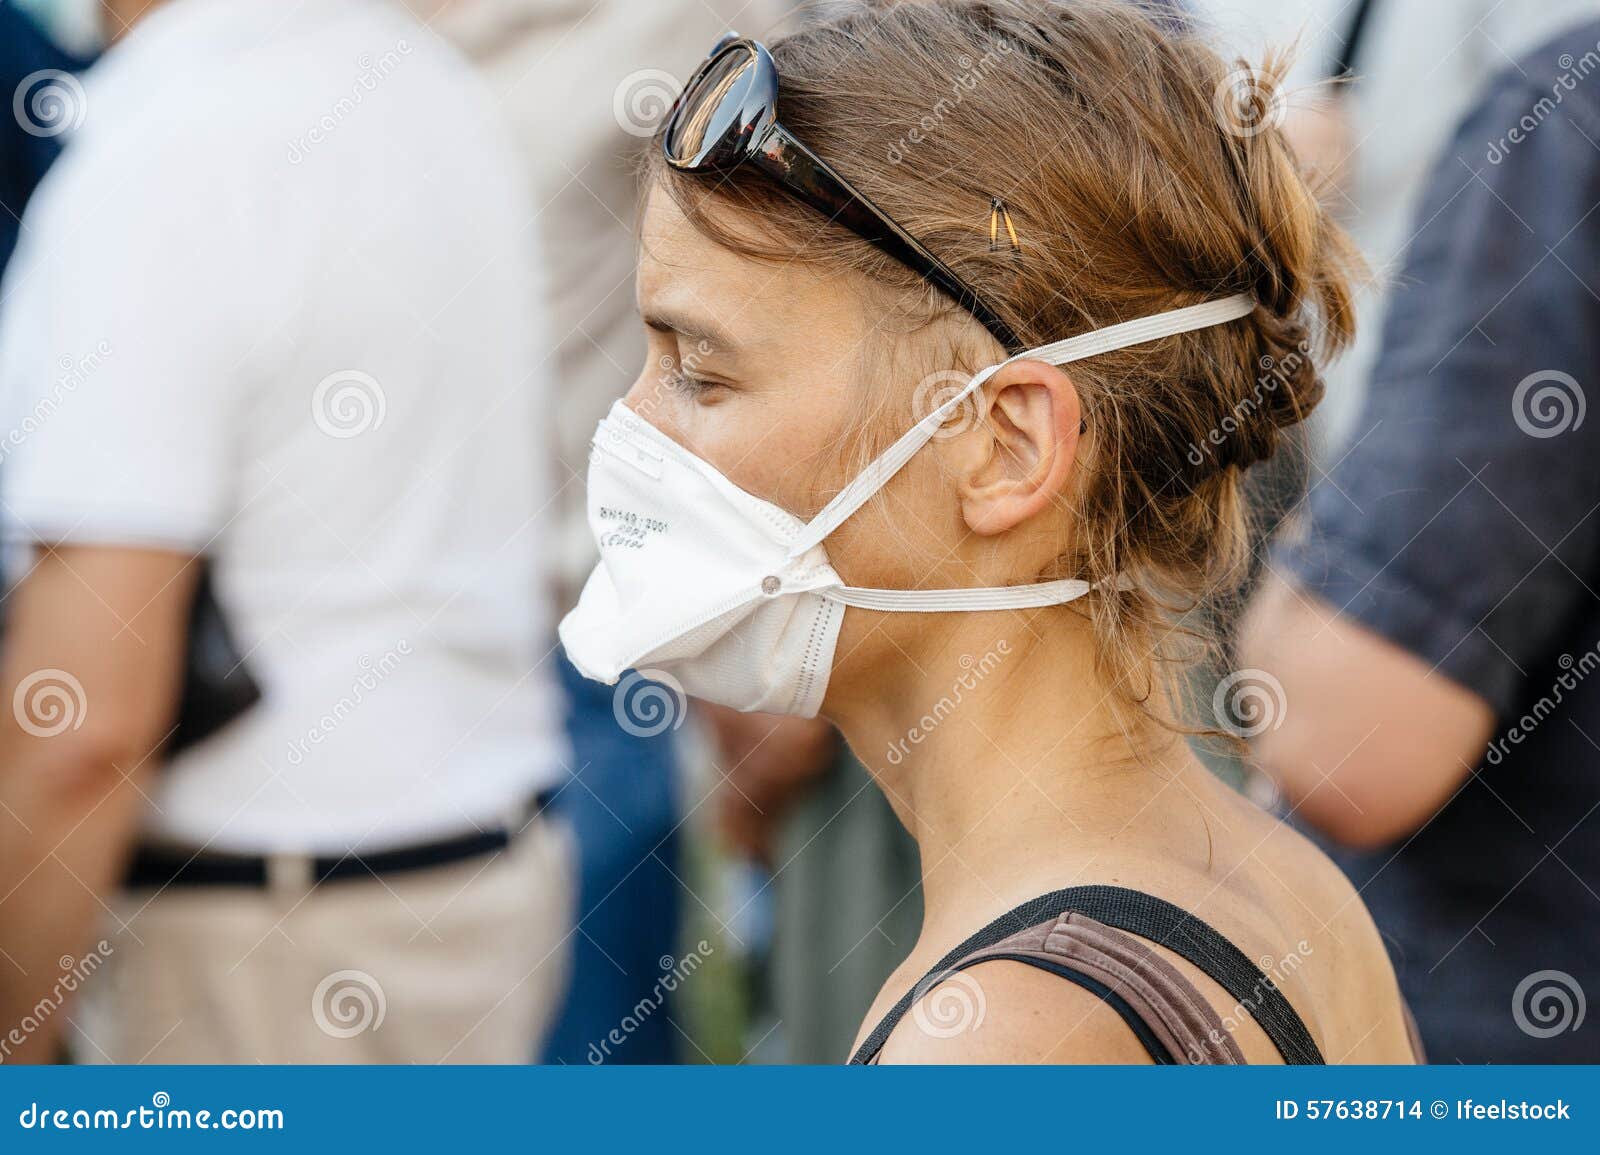 Leute, die gegen Luftverschmutzung protestieren. STRASSBURG, FRANKREICH - 6. AUGUST 2015: Tragende Beatmungsmasken der Leute, die gegen Luftverschmutzung in Straßburg, Elsass, Frankreich - tragende Maske der Frau protestieren